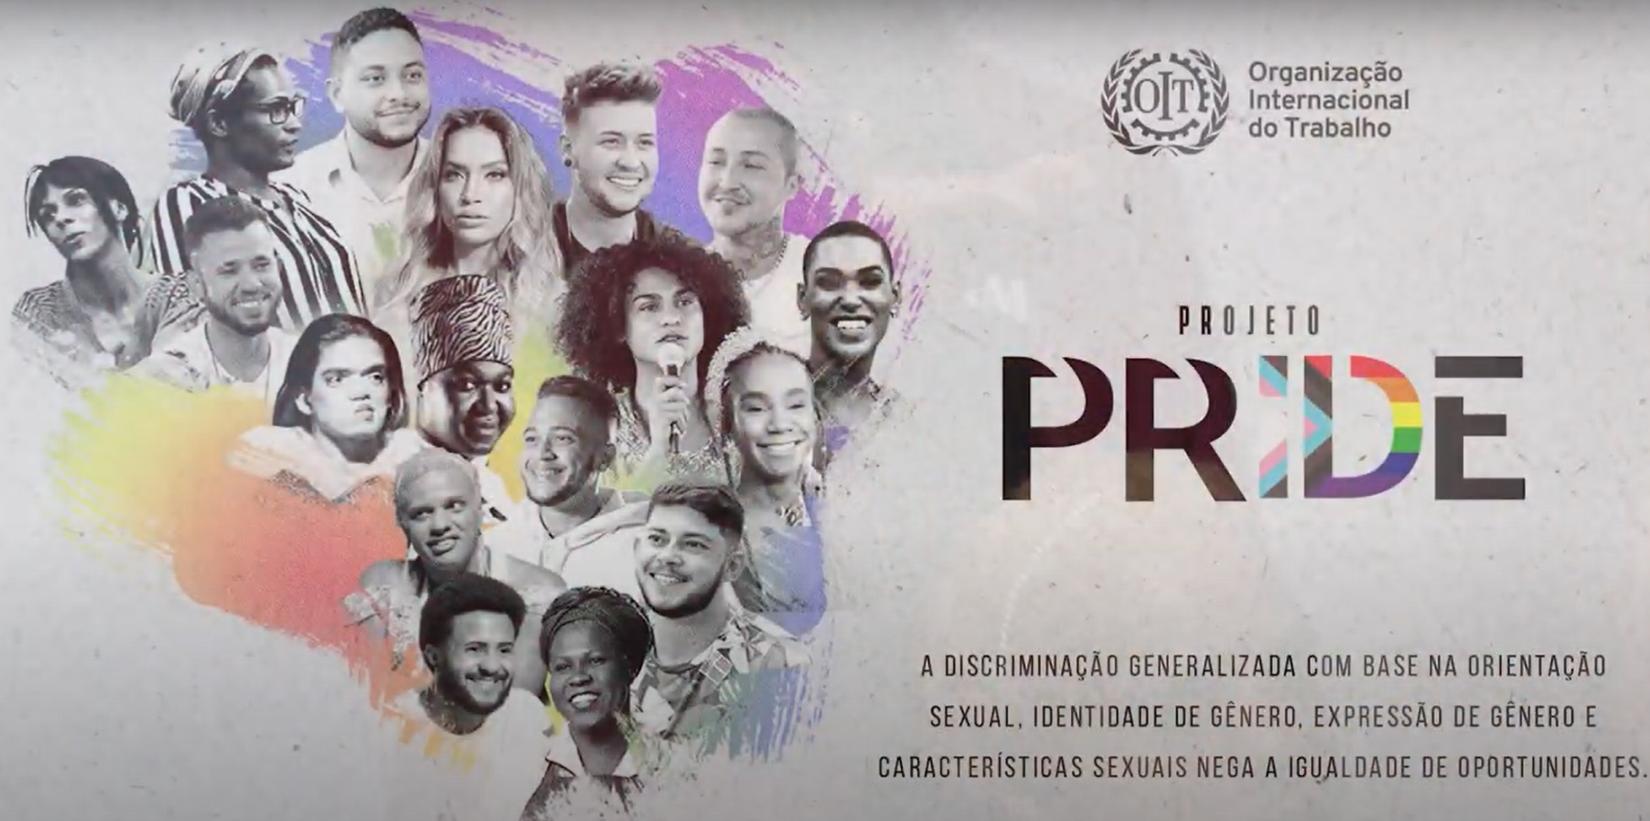 Lançado no mês da Visibilidade Trans, o projeto PRIDE vai capacitar 300 pessoas e será desenvolvido em parceria com a CUT e organizações de sociedade civil LGBTQIA+.